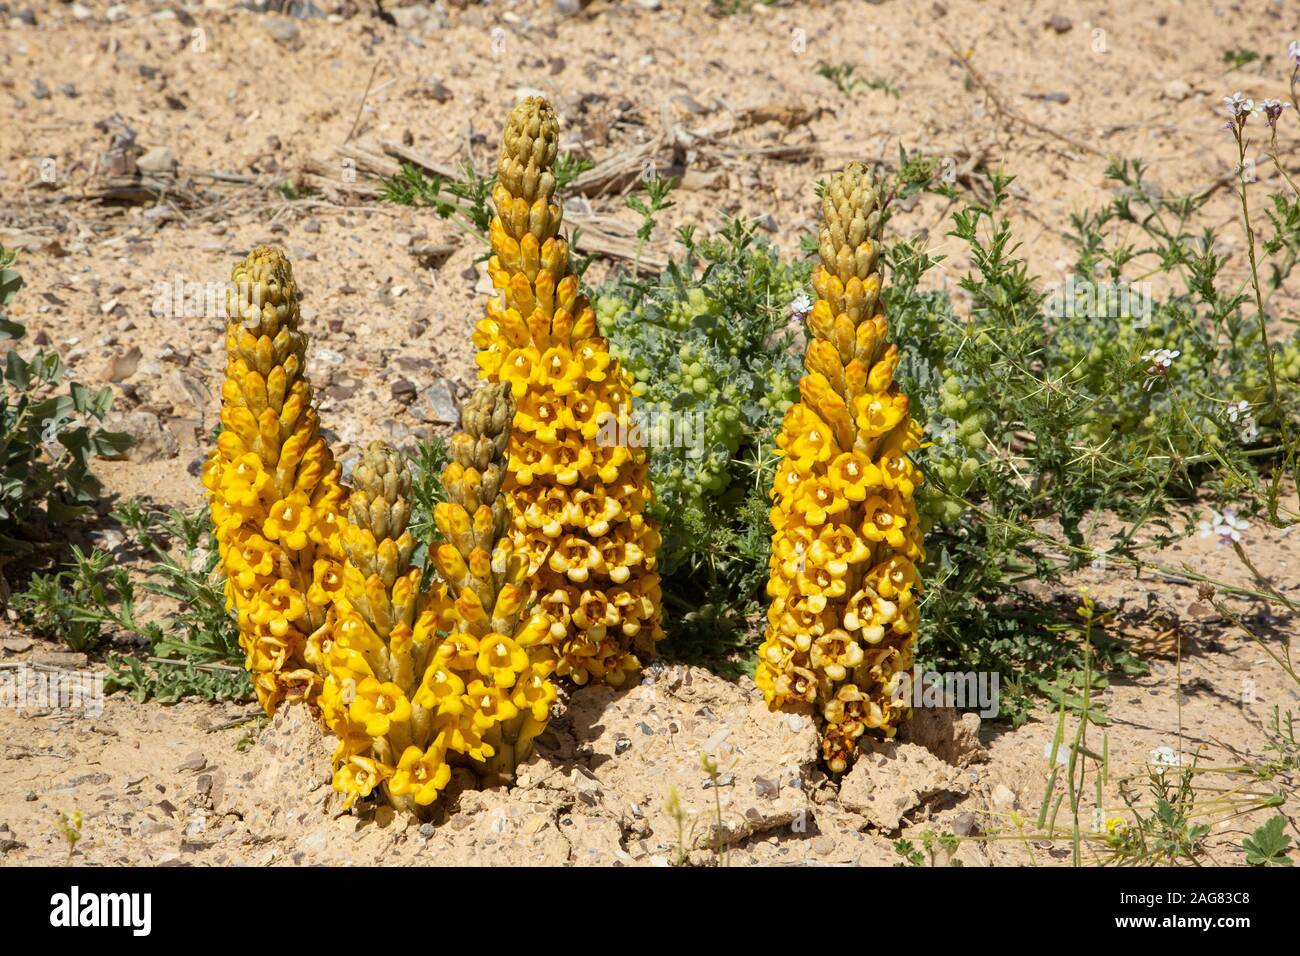 Gelb oder Wüste broomrape, Cistanche tubulosa. Diese Pflanze ist eine parasitäre Mitglied des broomrape Familie. In der Wüste Negev, Israel fotografiert. Stockfoto